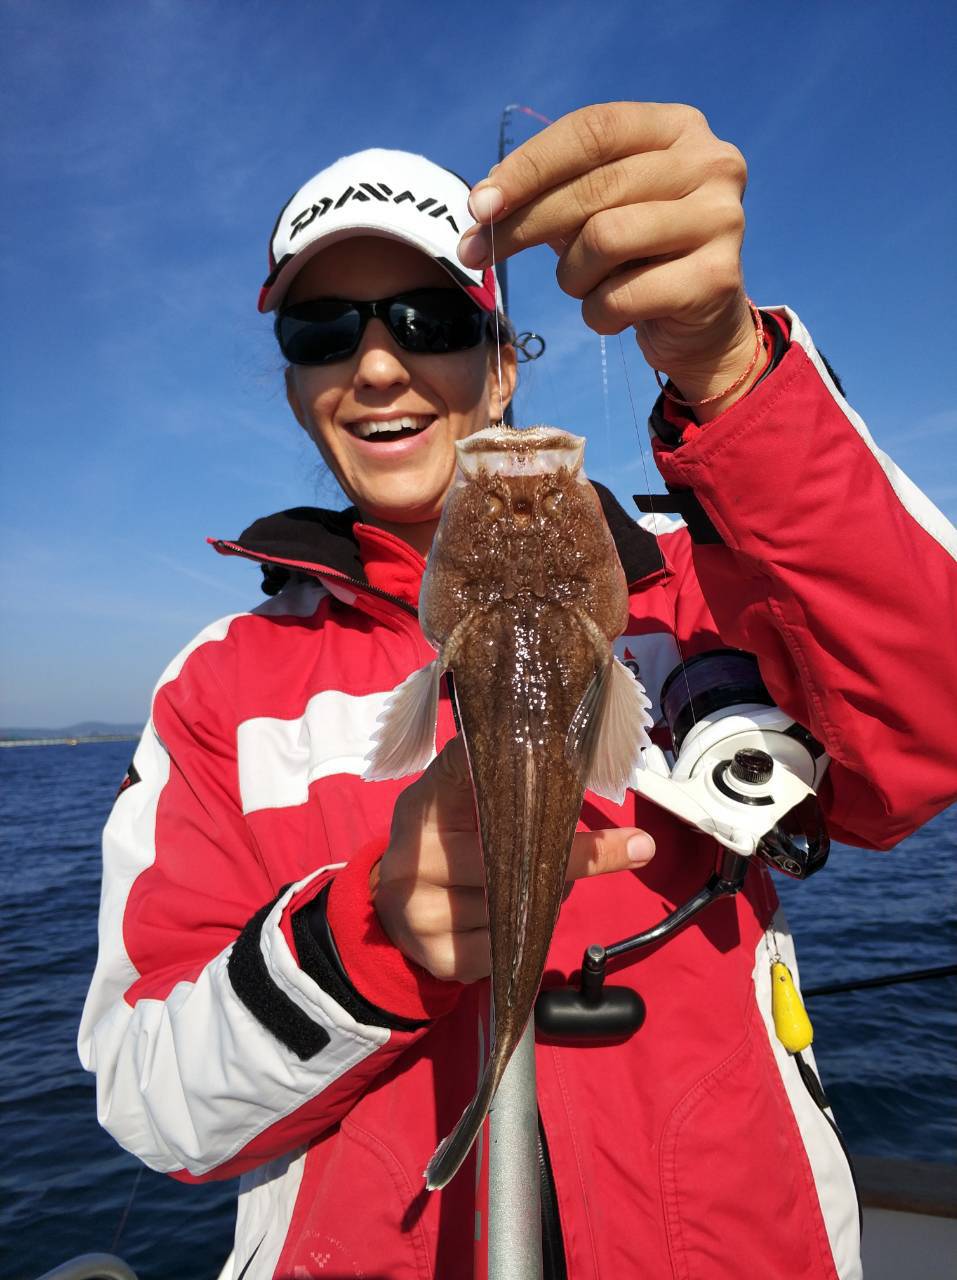 Ribolovka Tea Radil: Ja sam kao Federer u svijetu ribolova